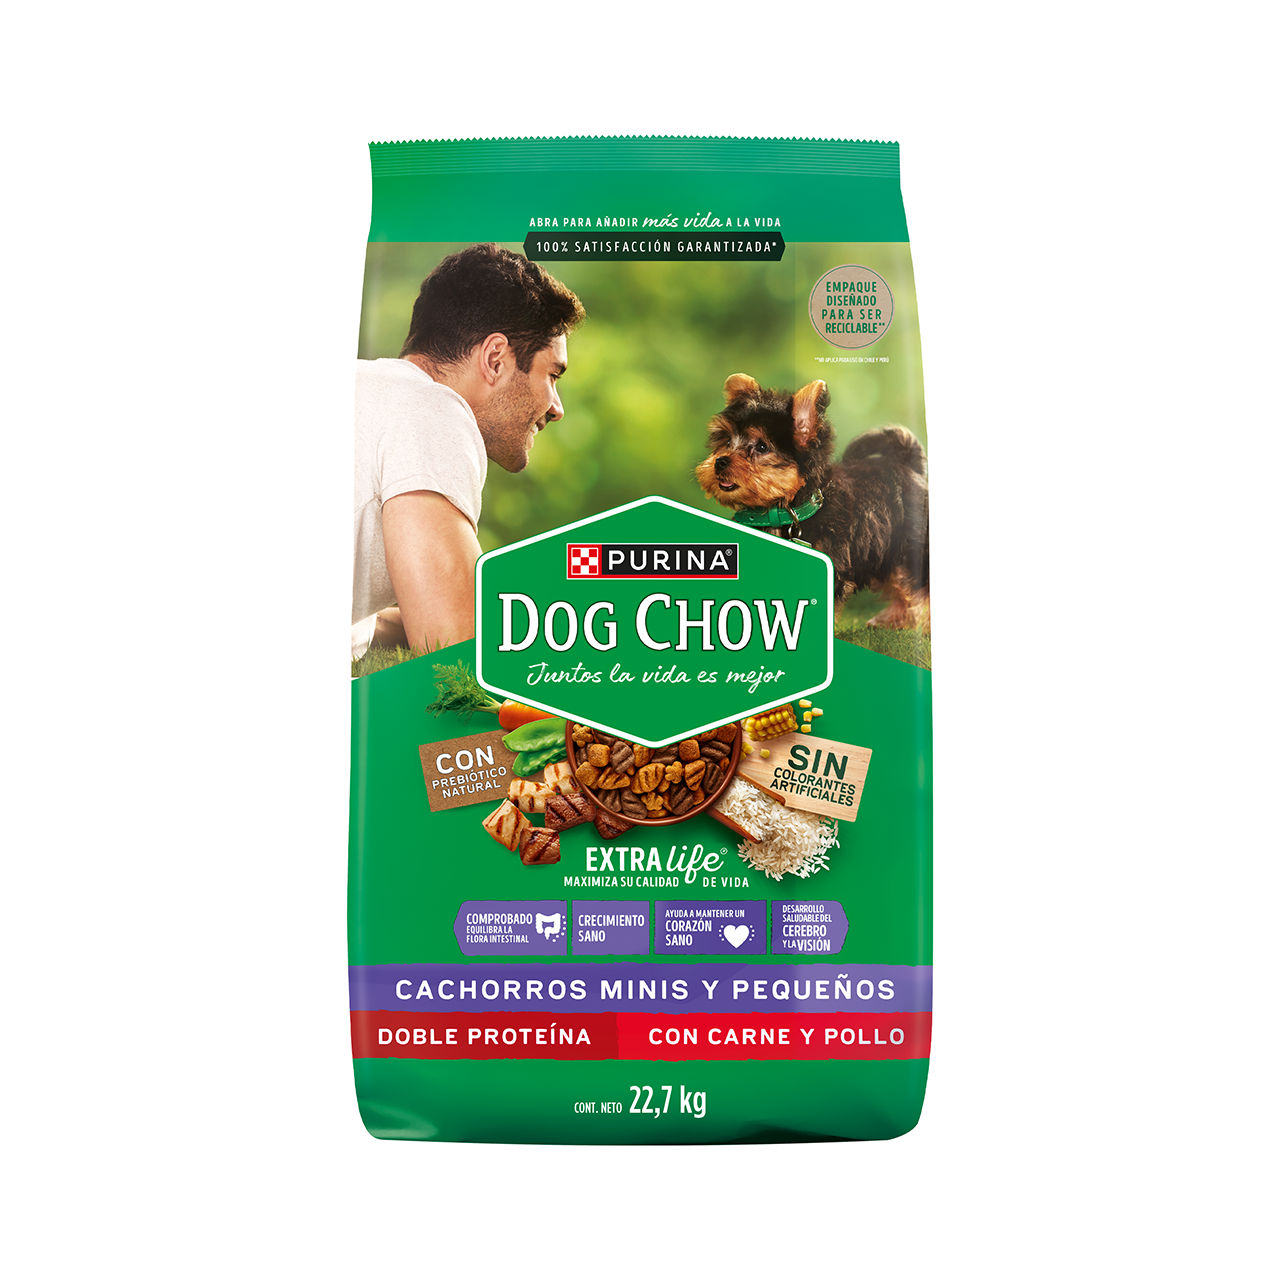 Dog Chow cachorros Minis y Pequeños 22.7kg